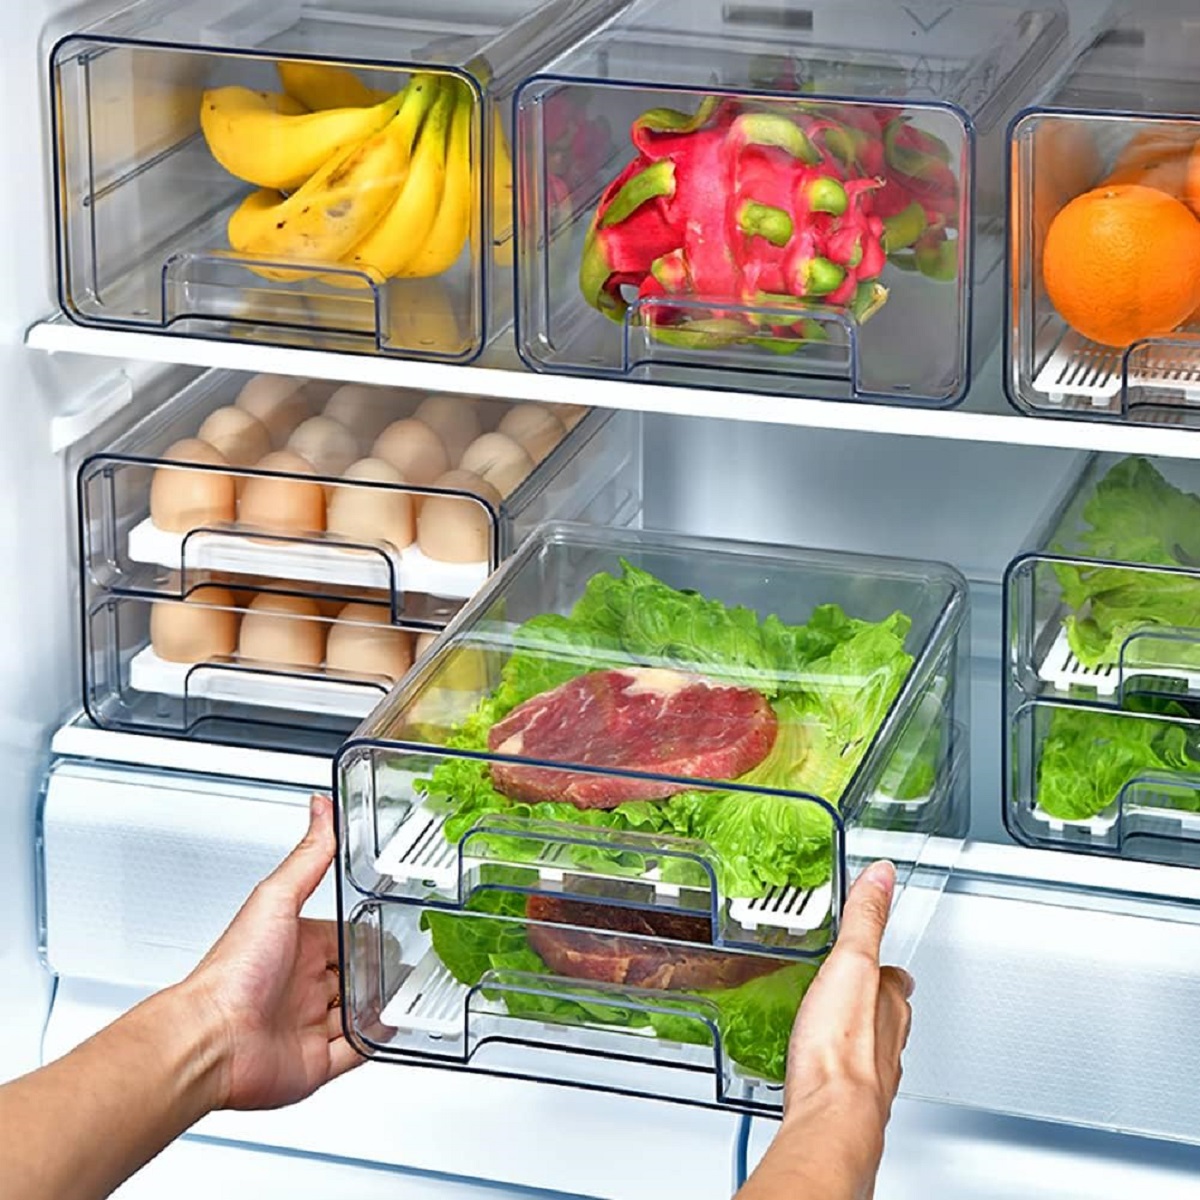 10 Best Refrigerator Storage Bins For 2023